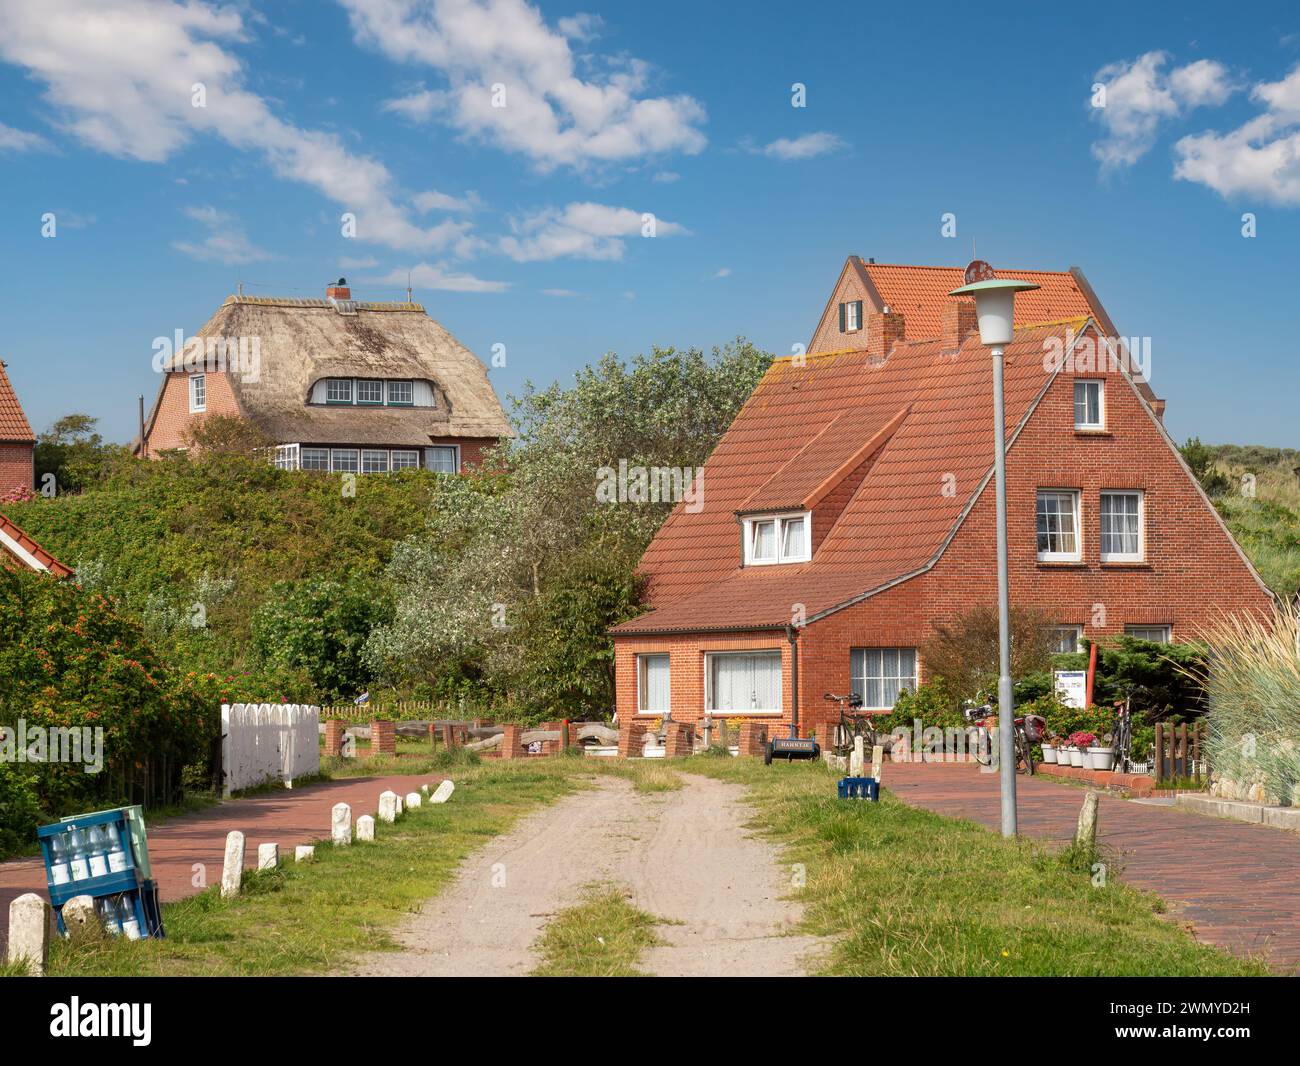 Scena di strada con strada sterrata e case nel villaggio dell'isola della Frisia orientale Juist, bassa Sassonia, Germania Foto Stock